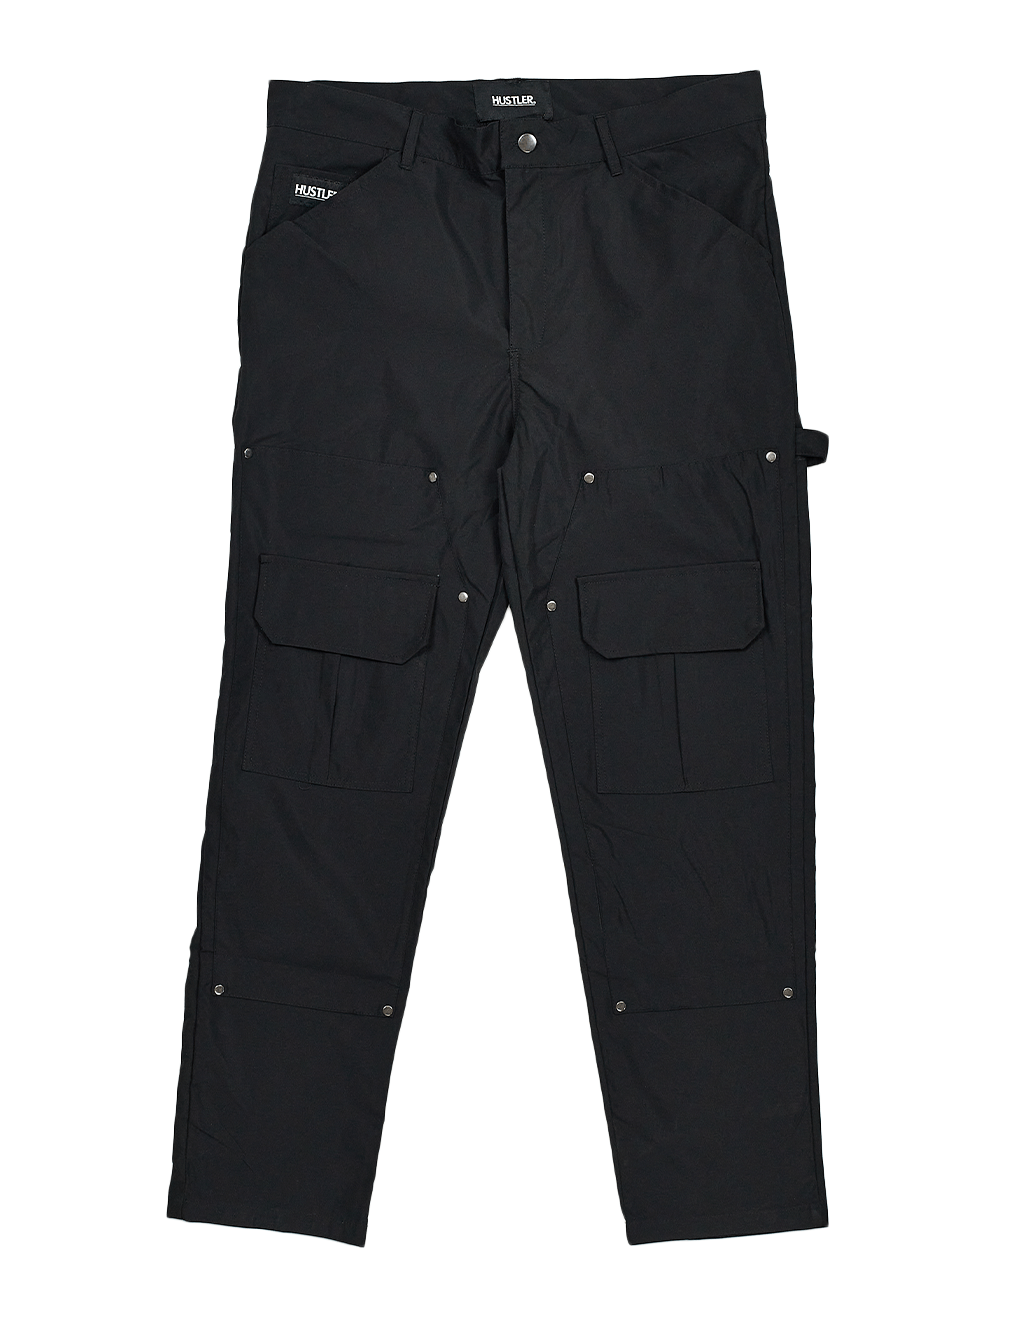 HUSTLER® Carpenter Pants - Black - Front